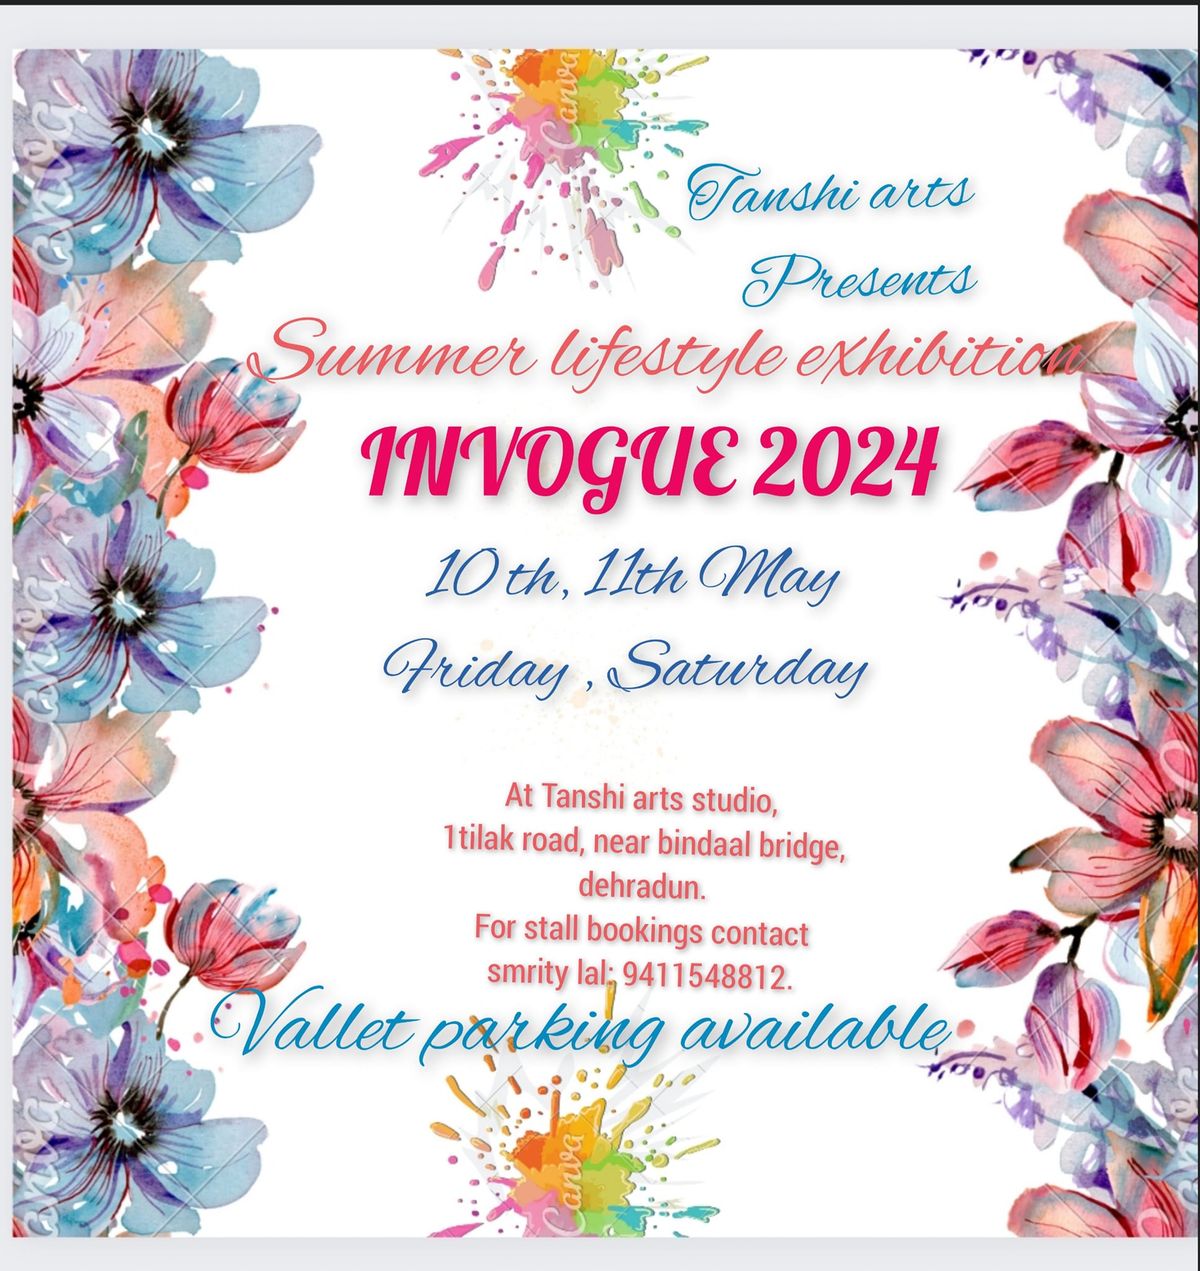 INVOGUE 2024, summer lifestyle exhibition 